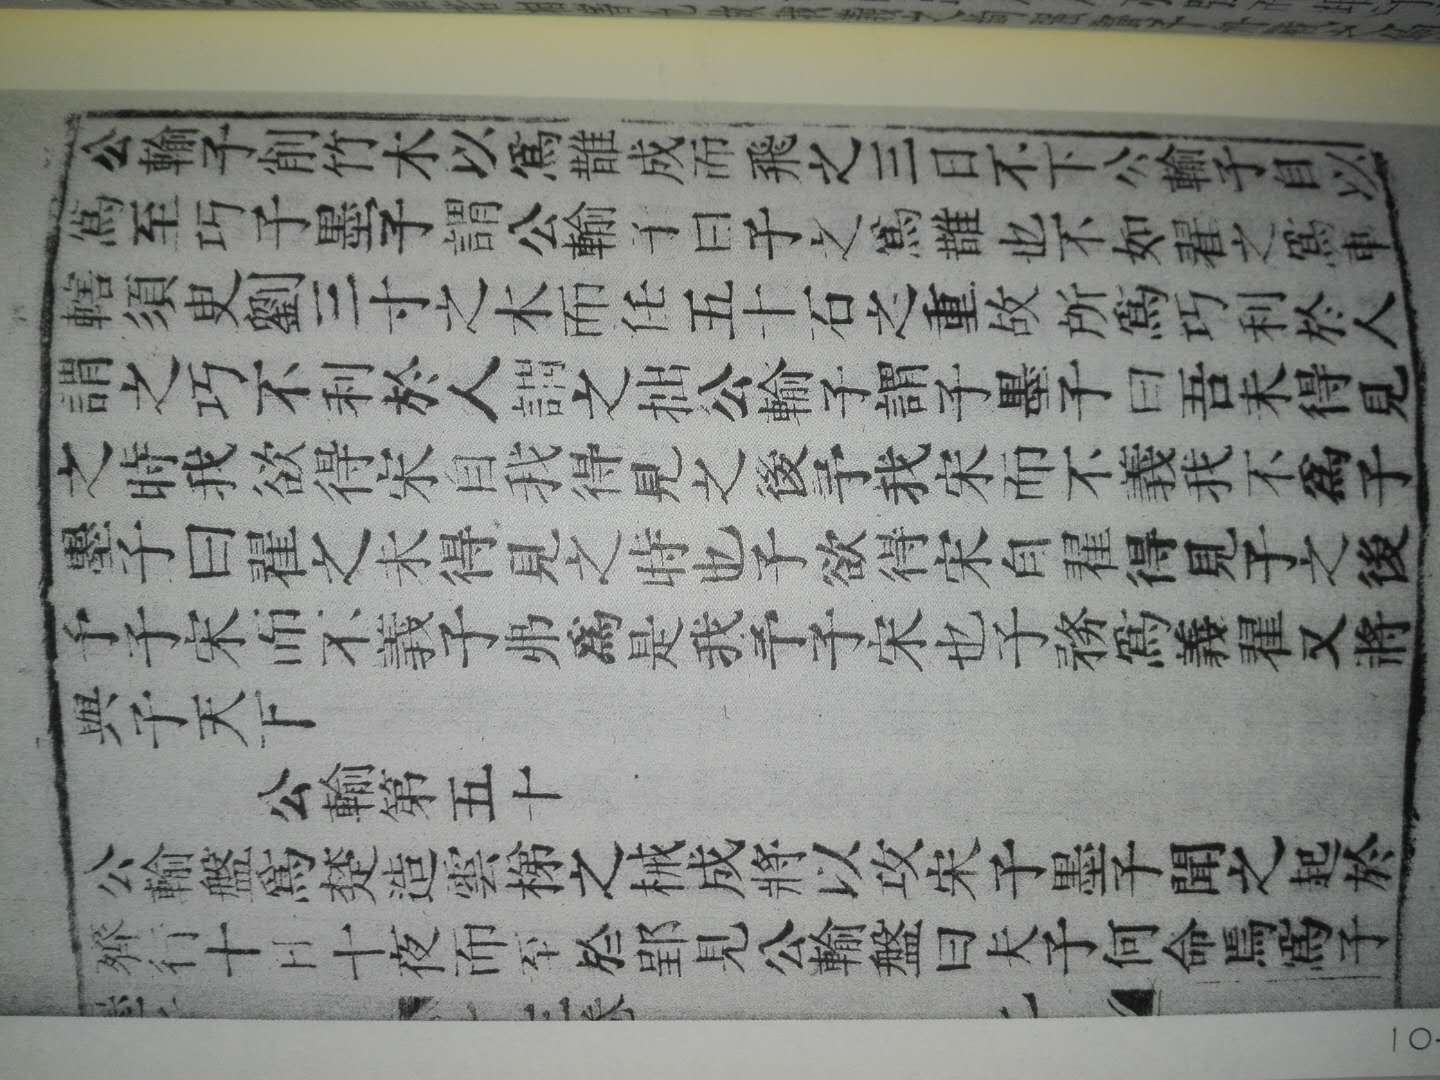 明活字本墨子是有名的善本，清代著名学者黄丕烈还用另一版本道藏本为此书做了校对，更具价值。